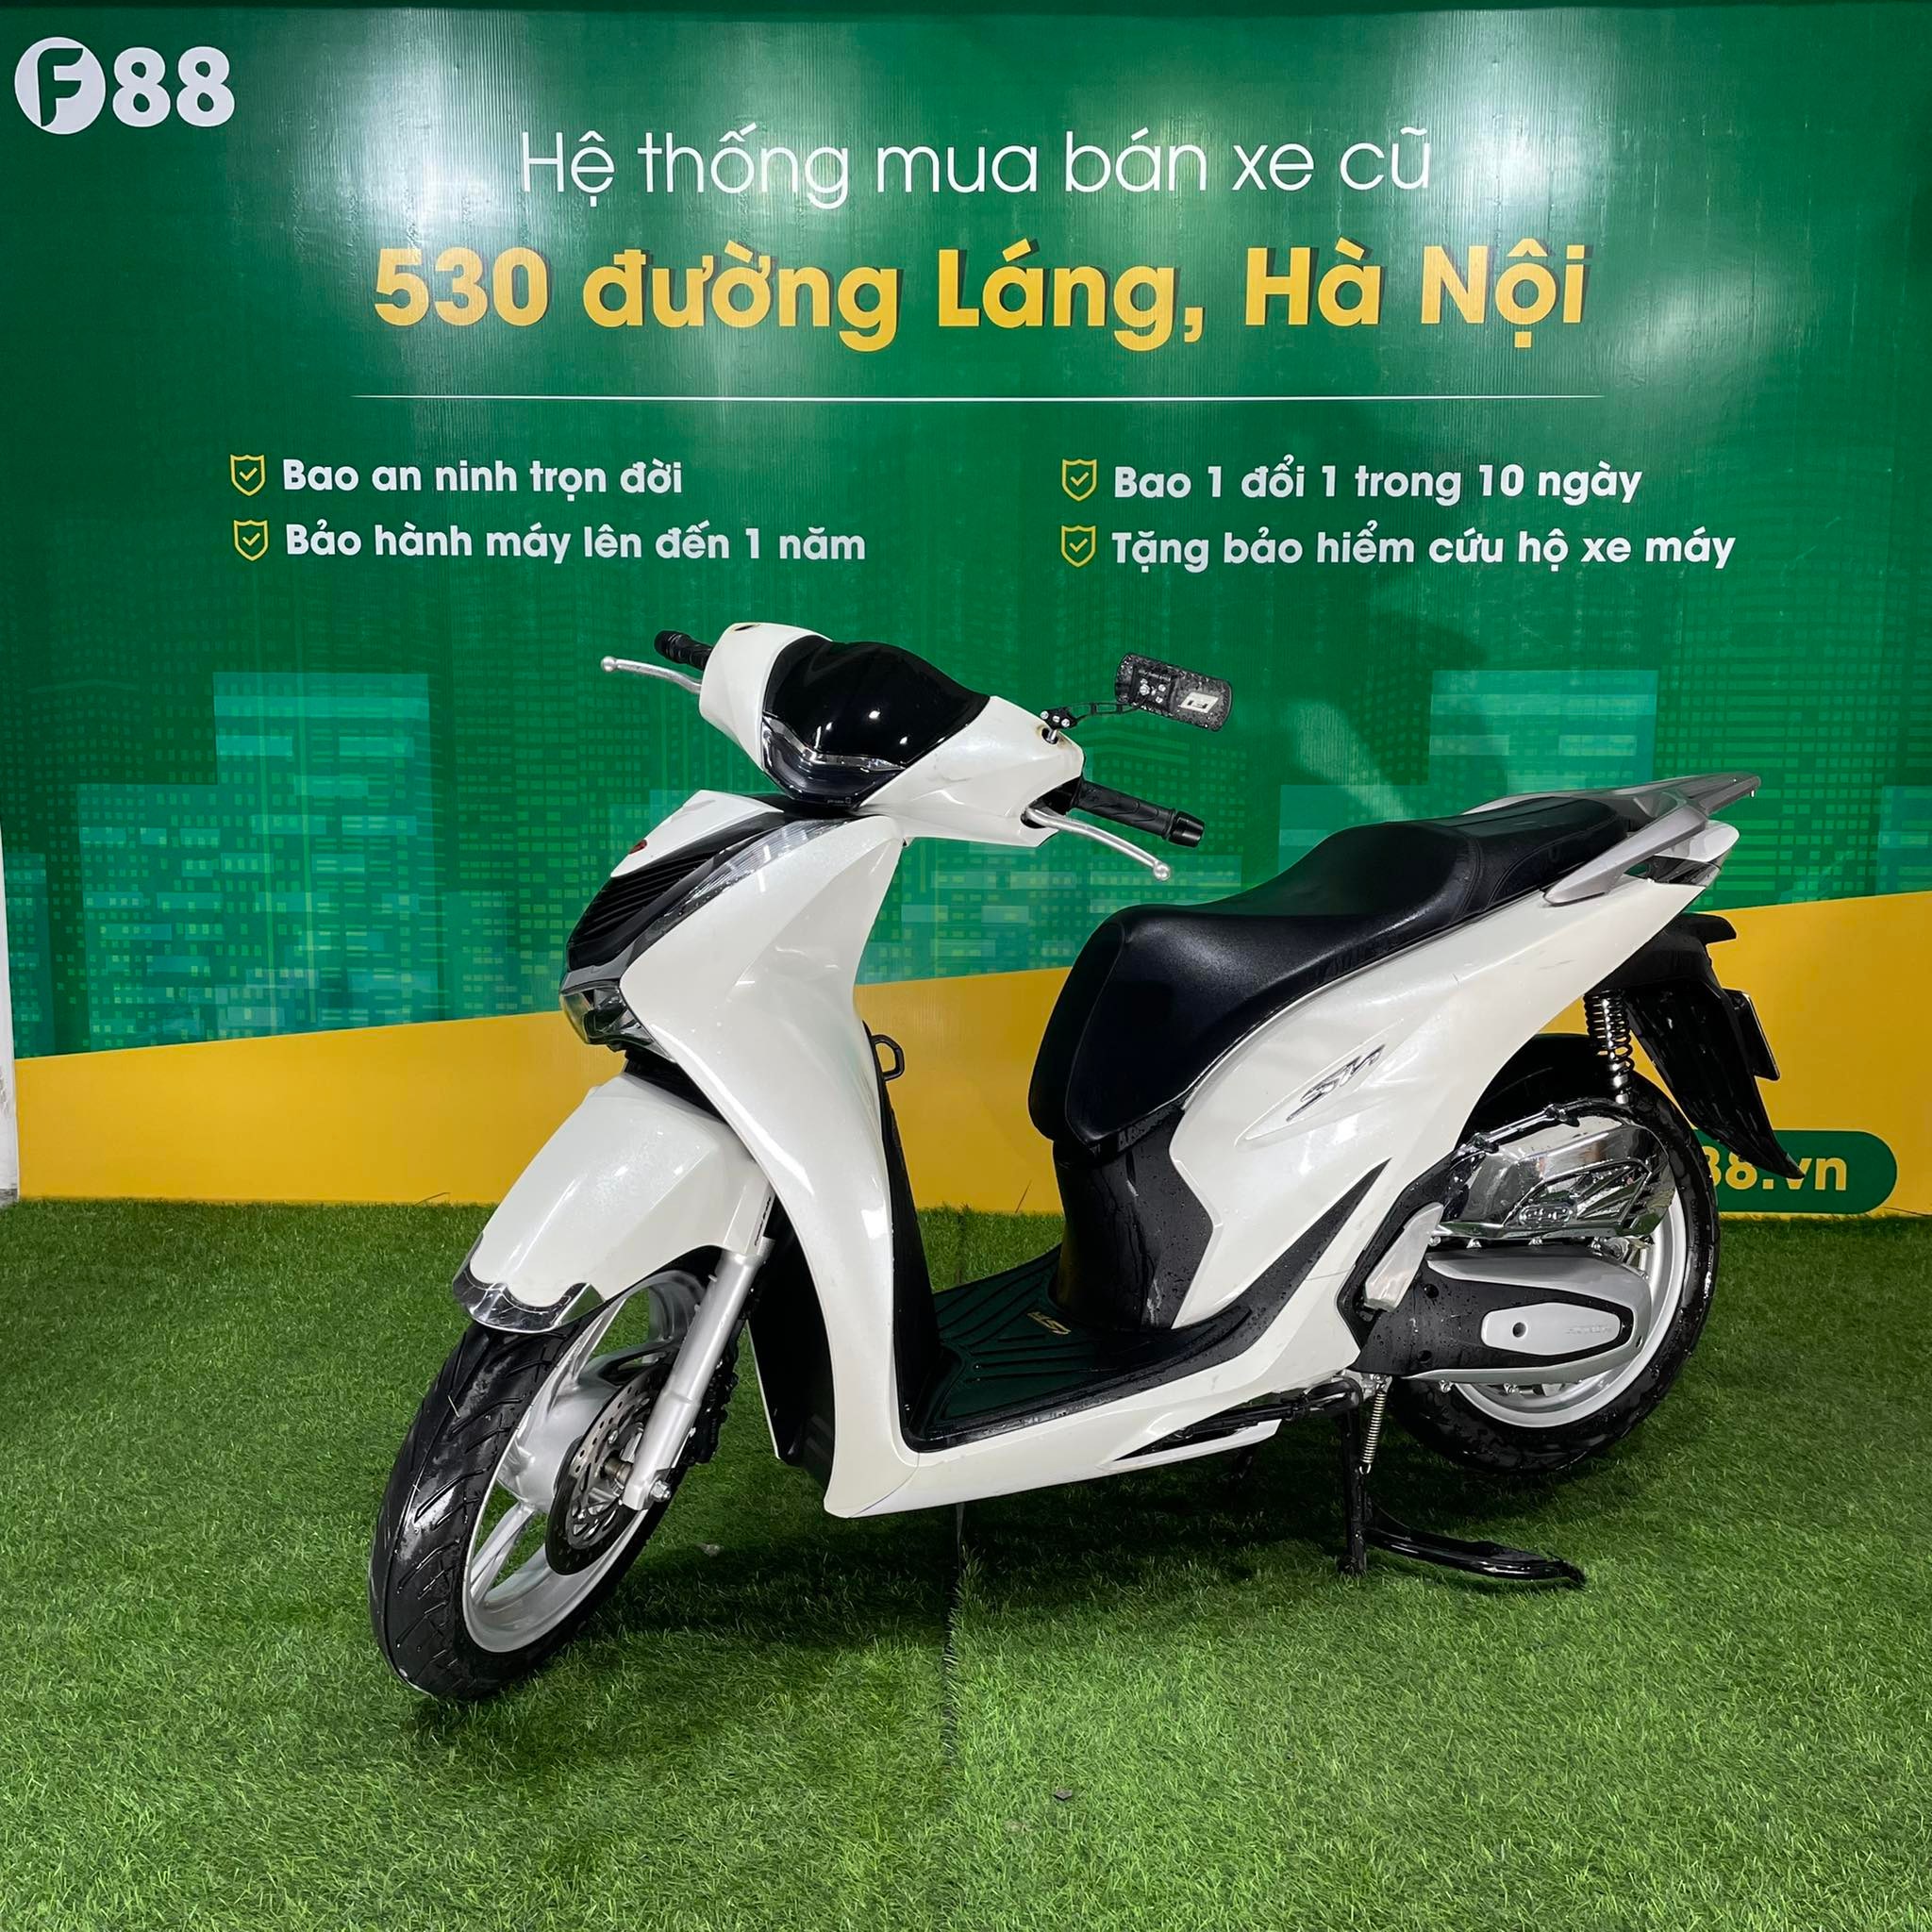 CHÍNH THỨC Honda SH 2020 trình làng tại Việt Nam giá từ 71 triệu đồng